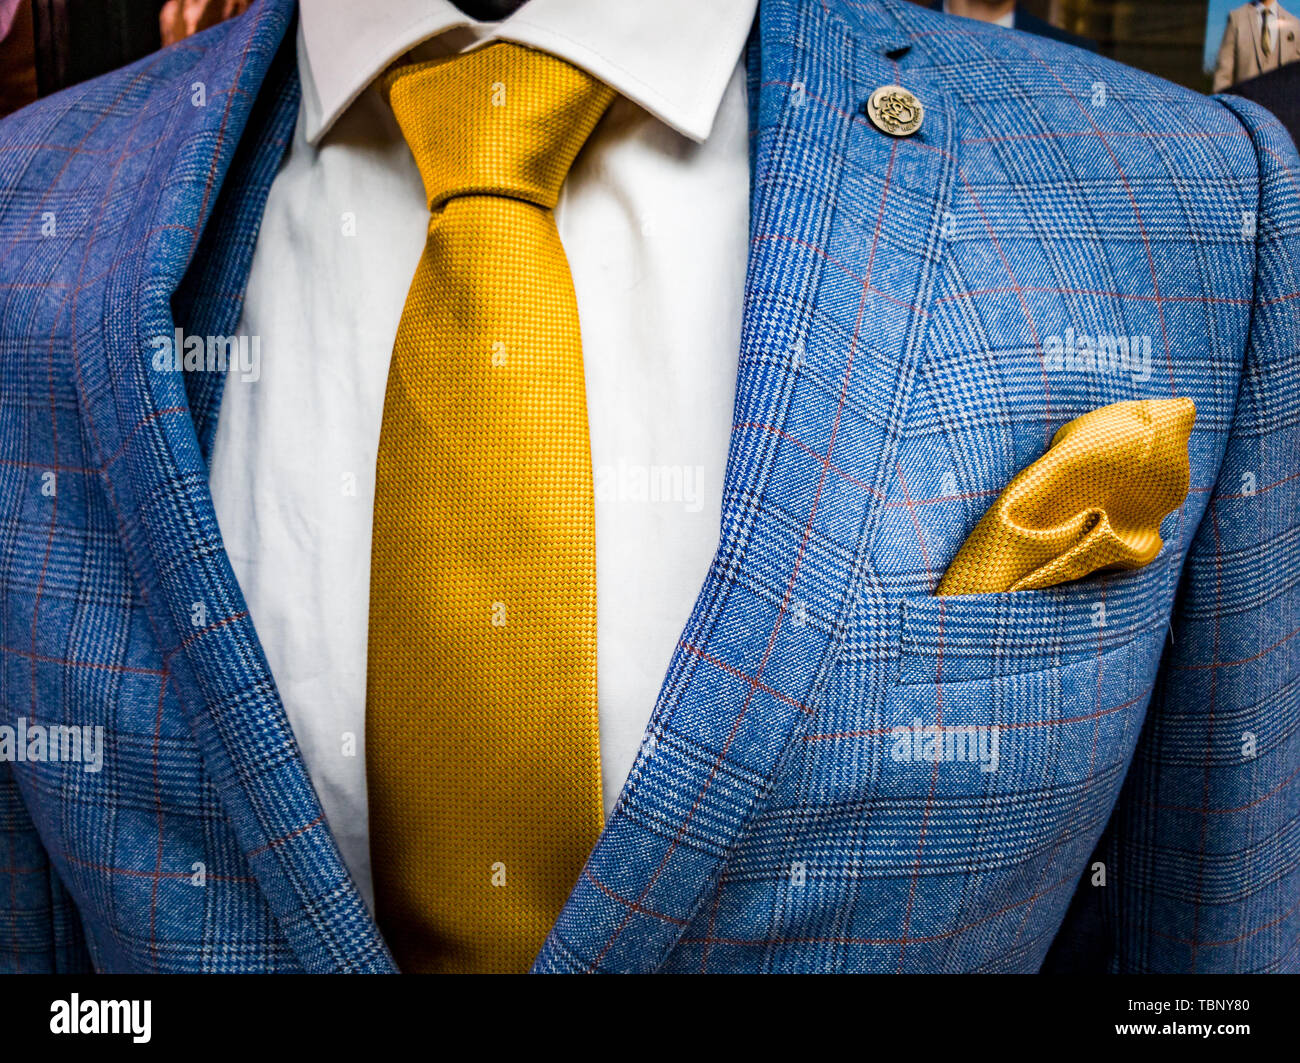 Dernières tendances en costume, chemise et cravate bleu combinaison -  costume - cravate jaune - chemise blanche Photo Stock - Alamy